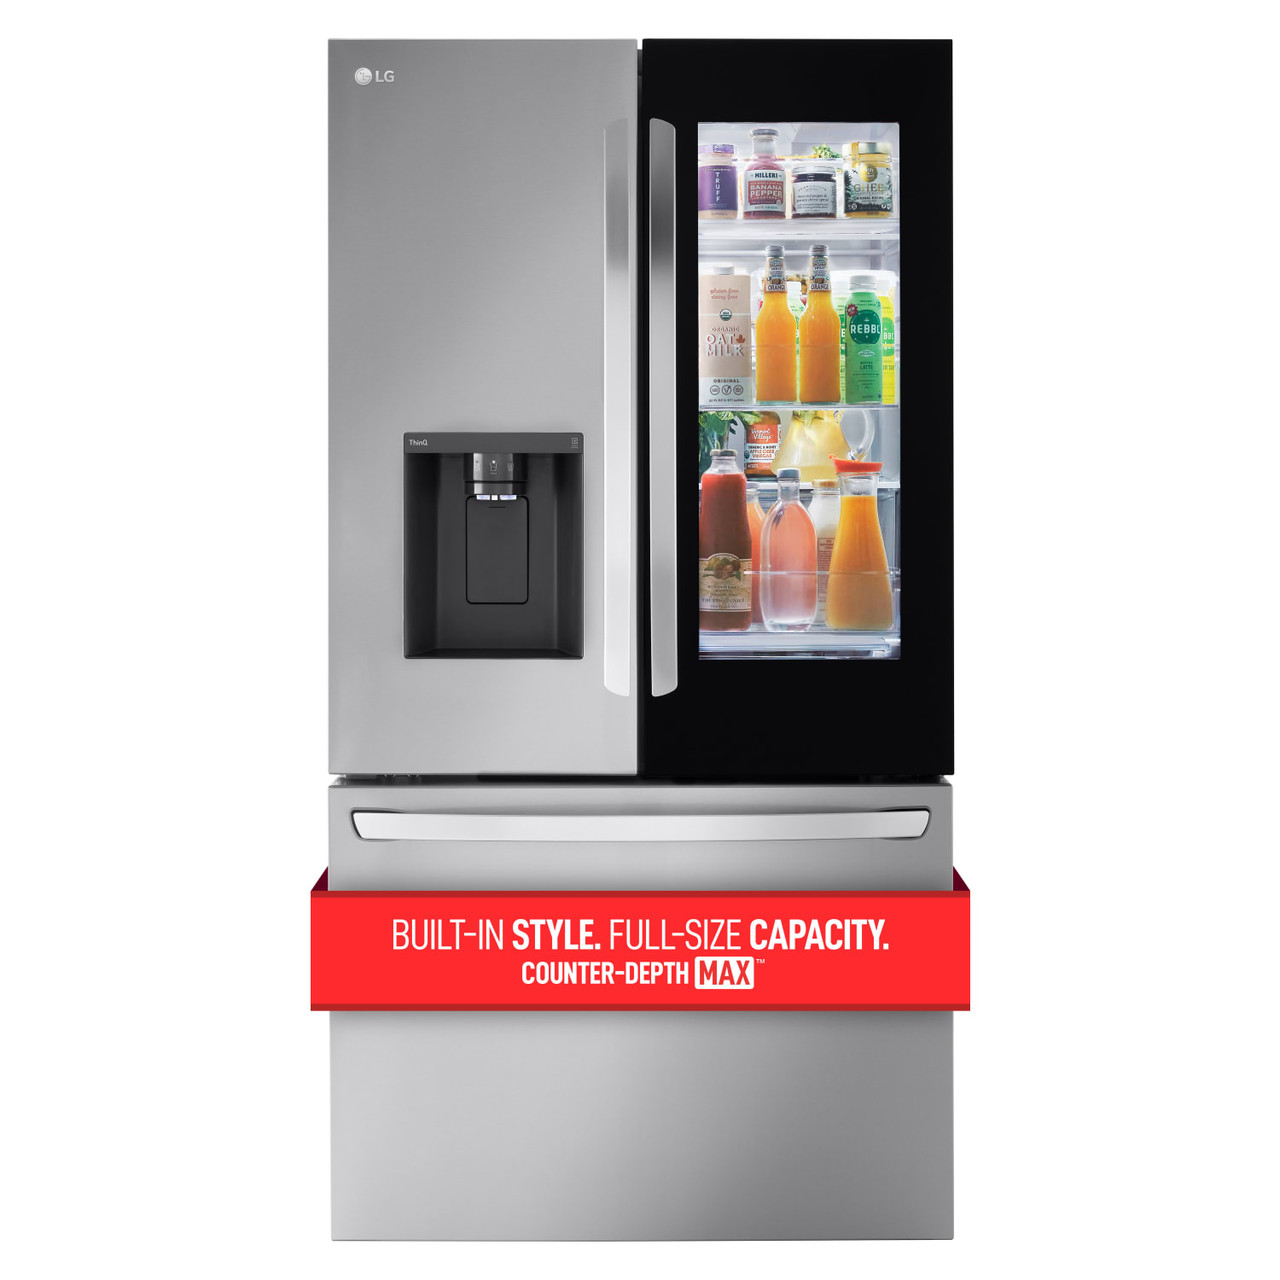 LG 26 cu. ft. Smart InstaView Counter-Depth French Door Refrigerator - LRFOC2606S